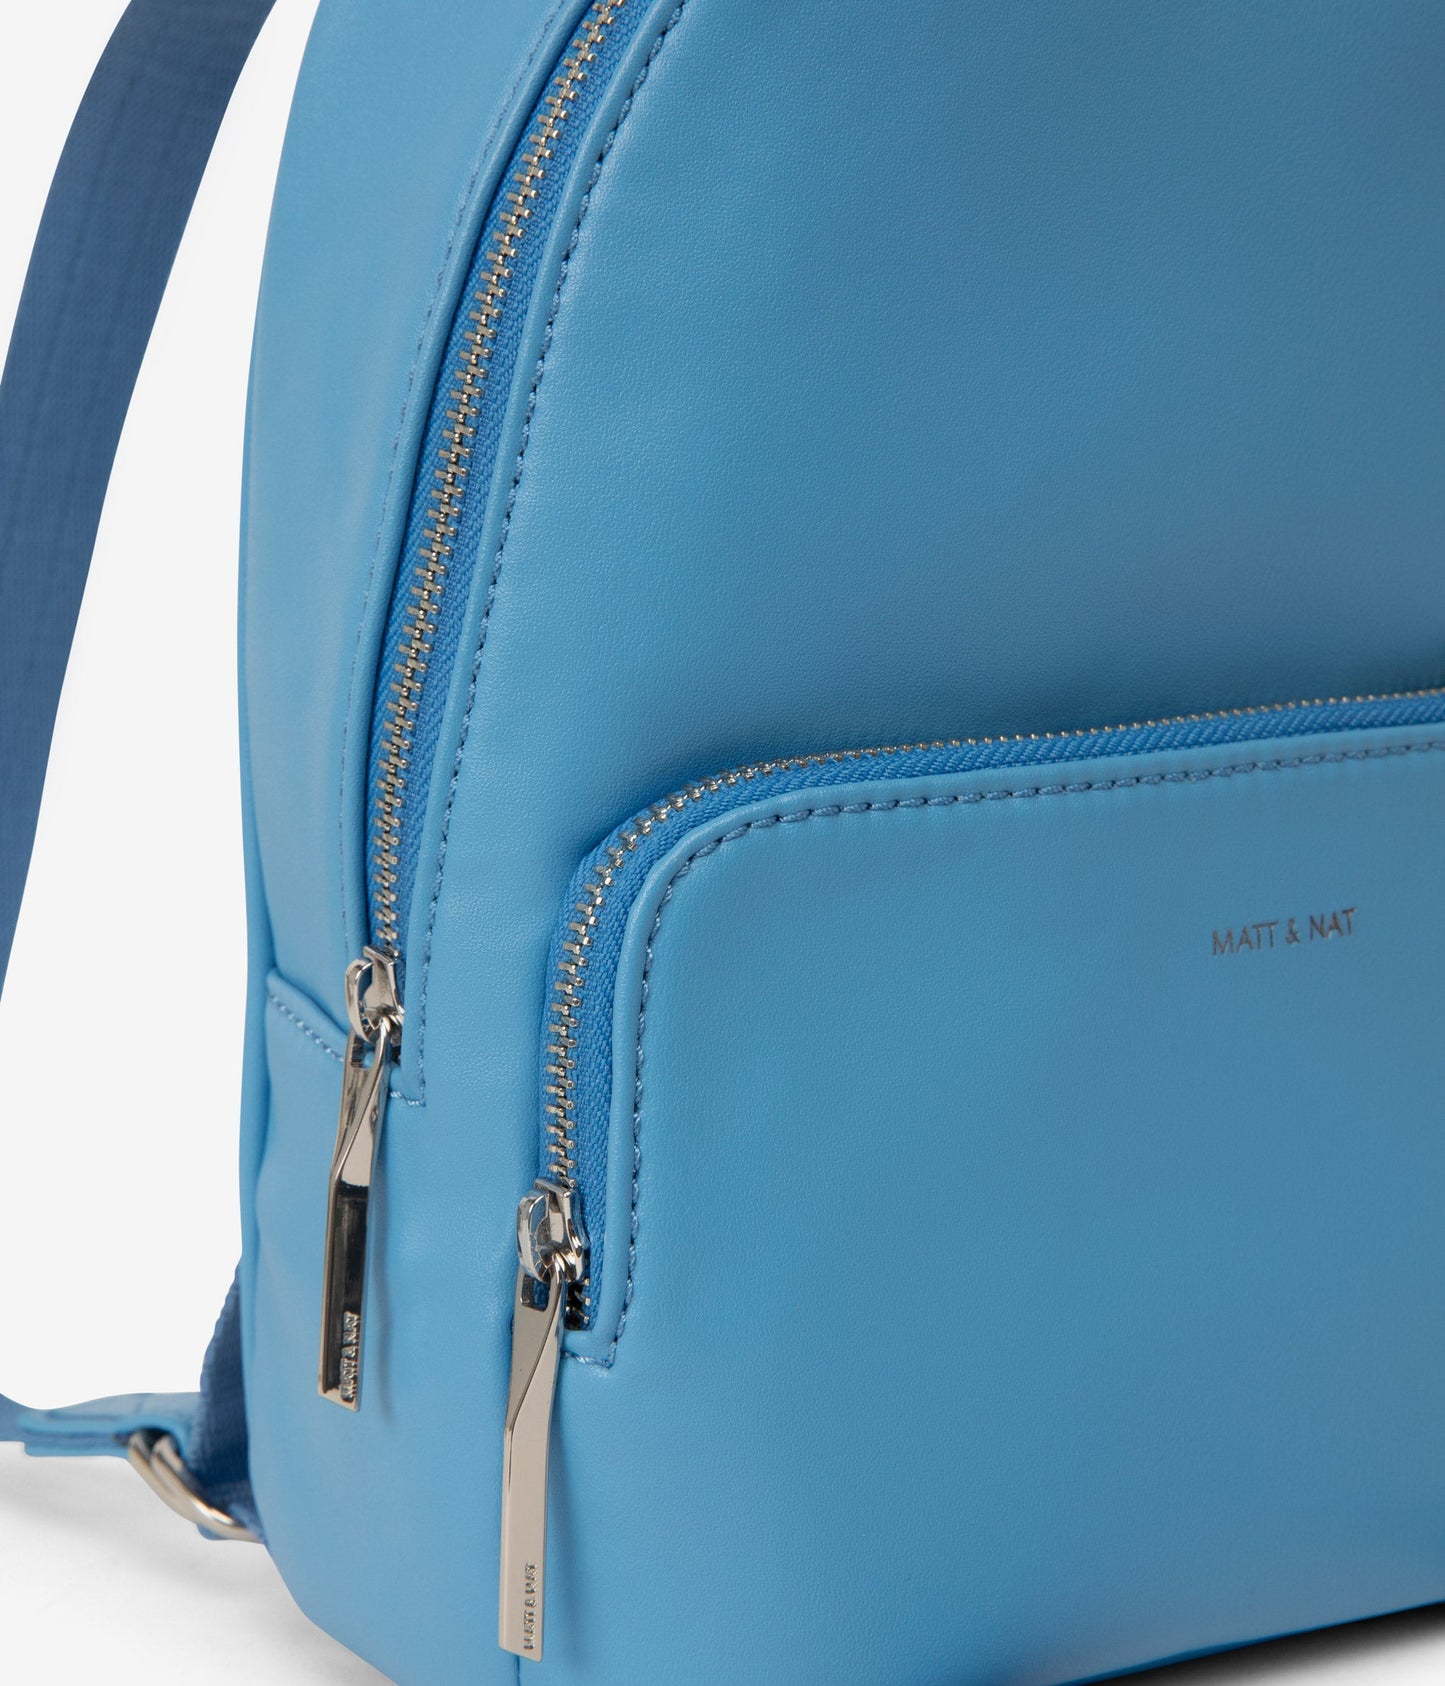 CAROSM Small Vegan Backpack - Sol | Color: Blue - variant::resort